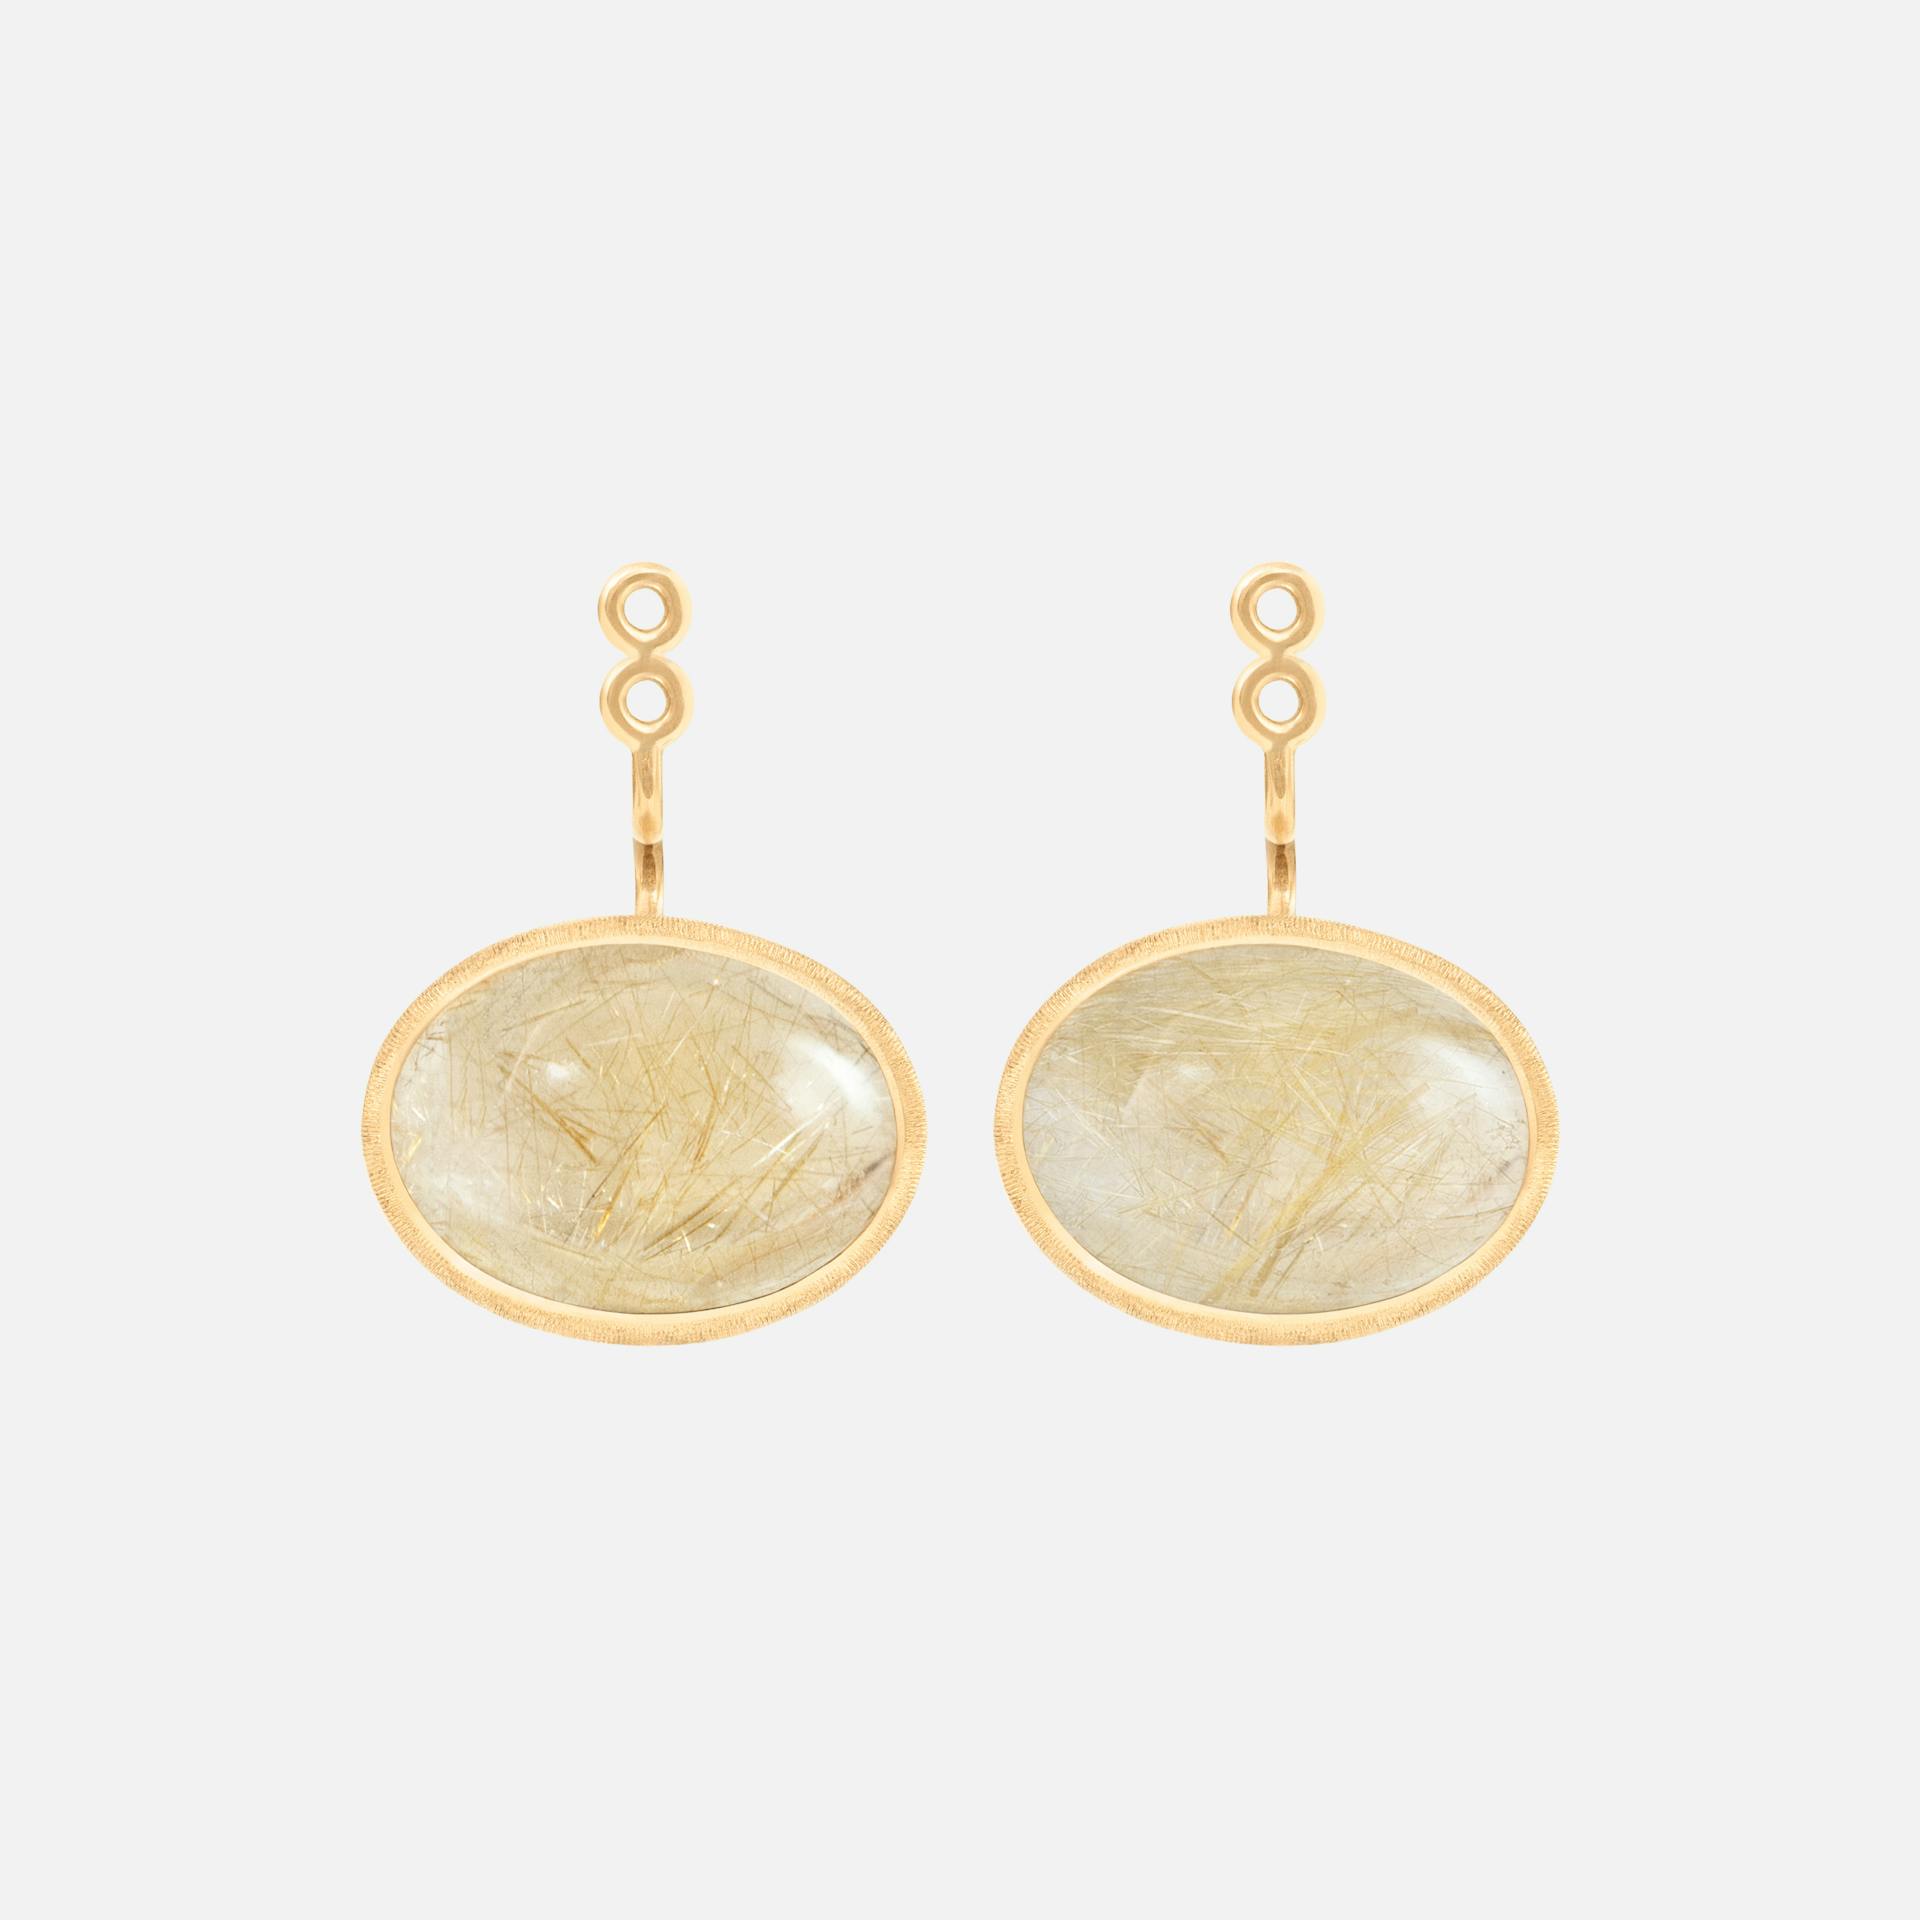 Lotus earring pendants large 18k gold and rutile quartz